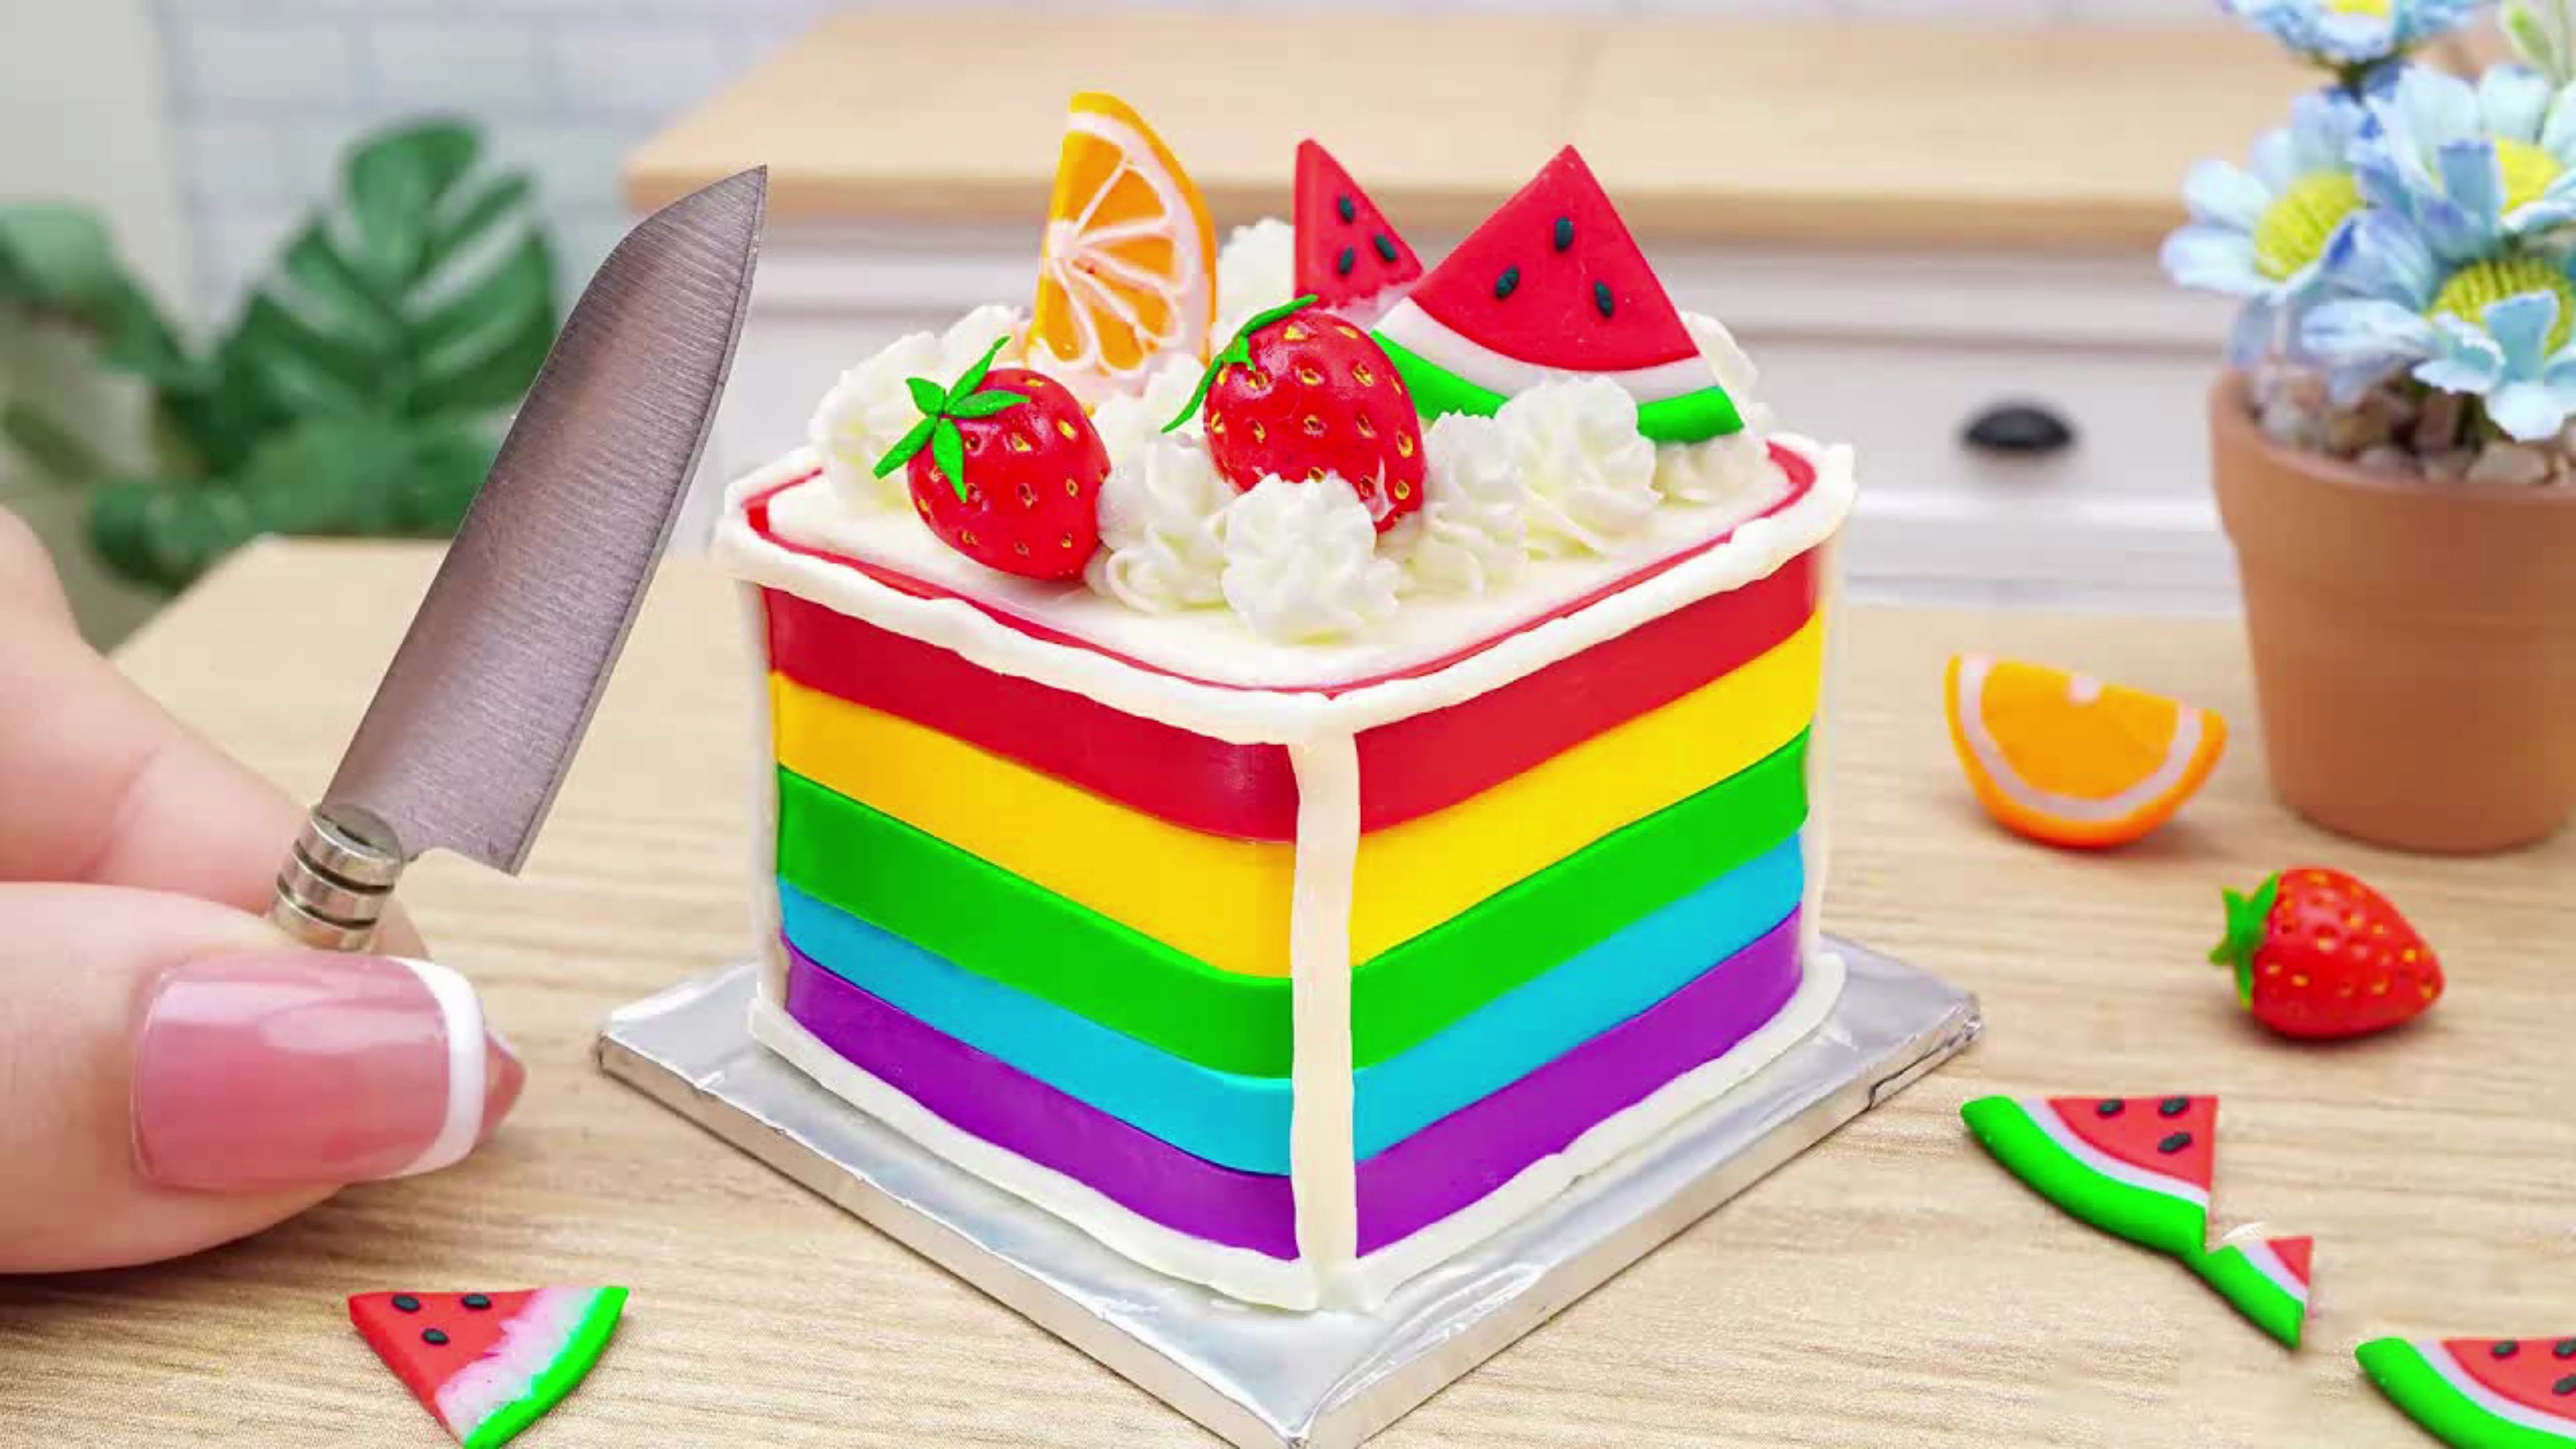 治愈解压迷你美食:方形彩虹水果蛋糕装饰